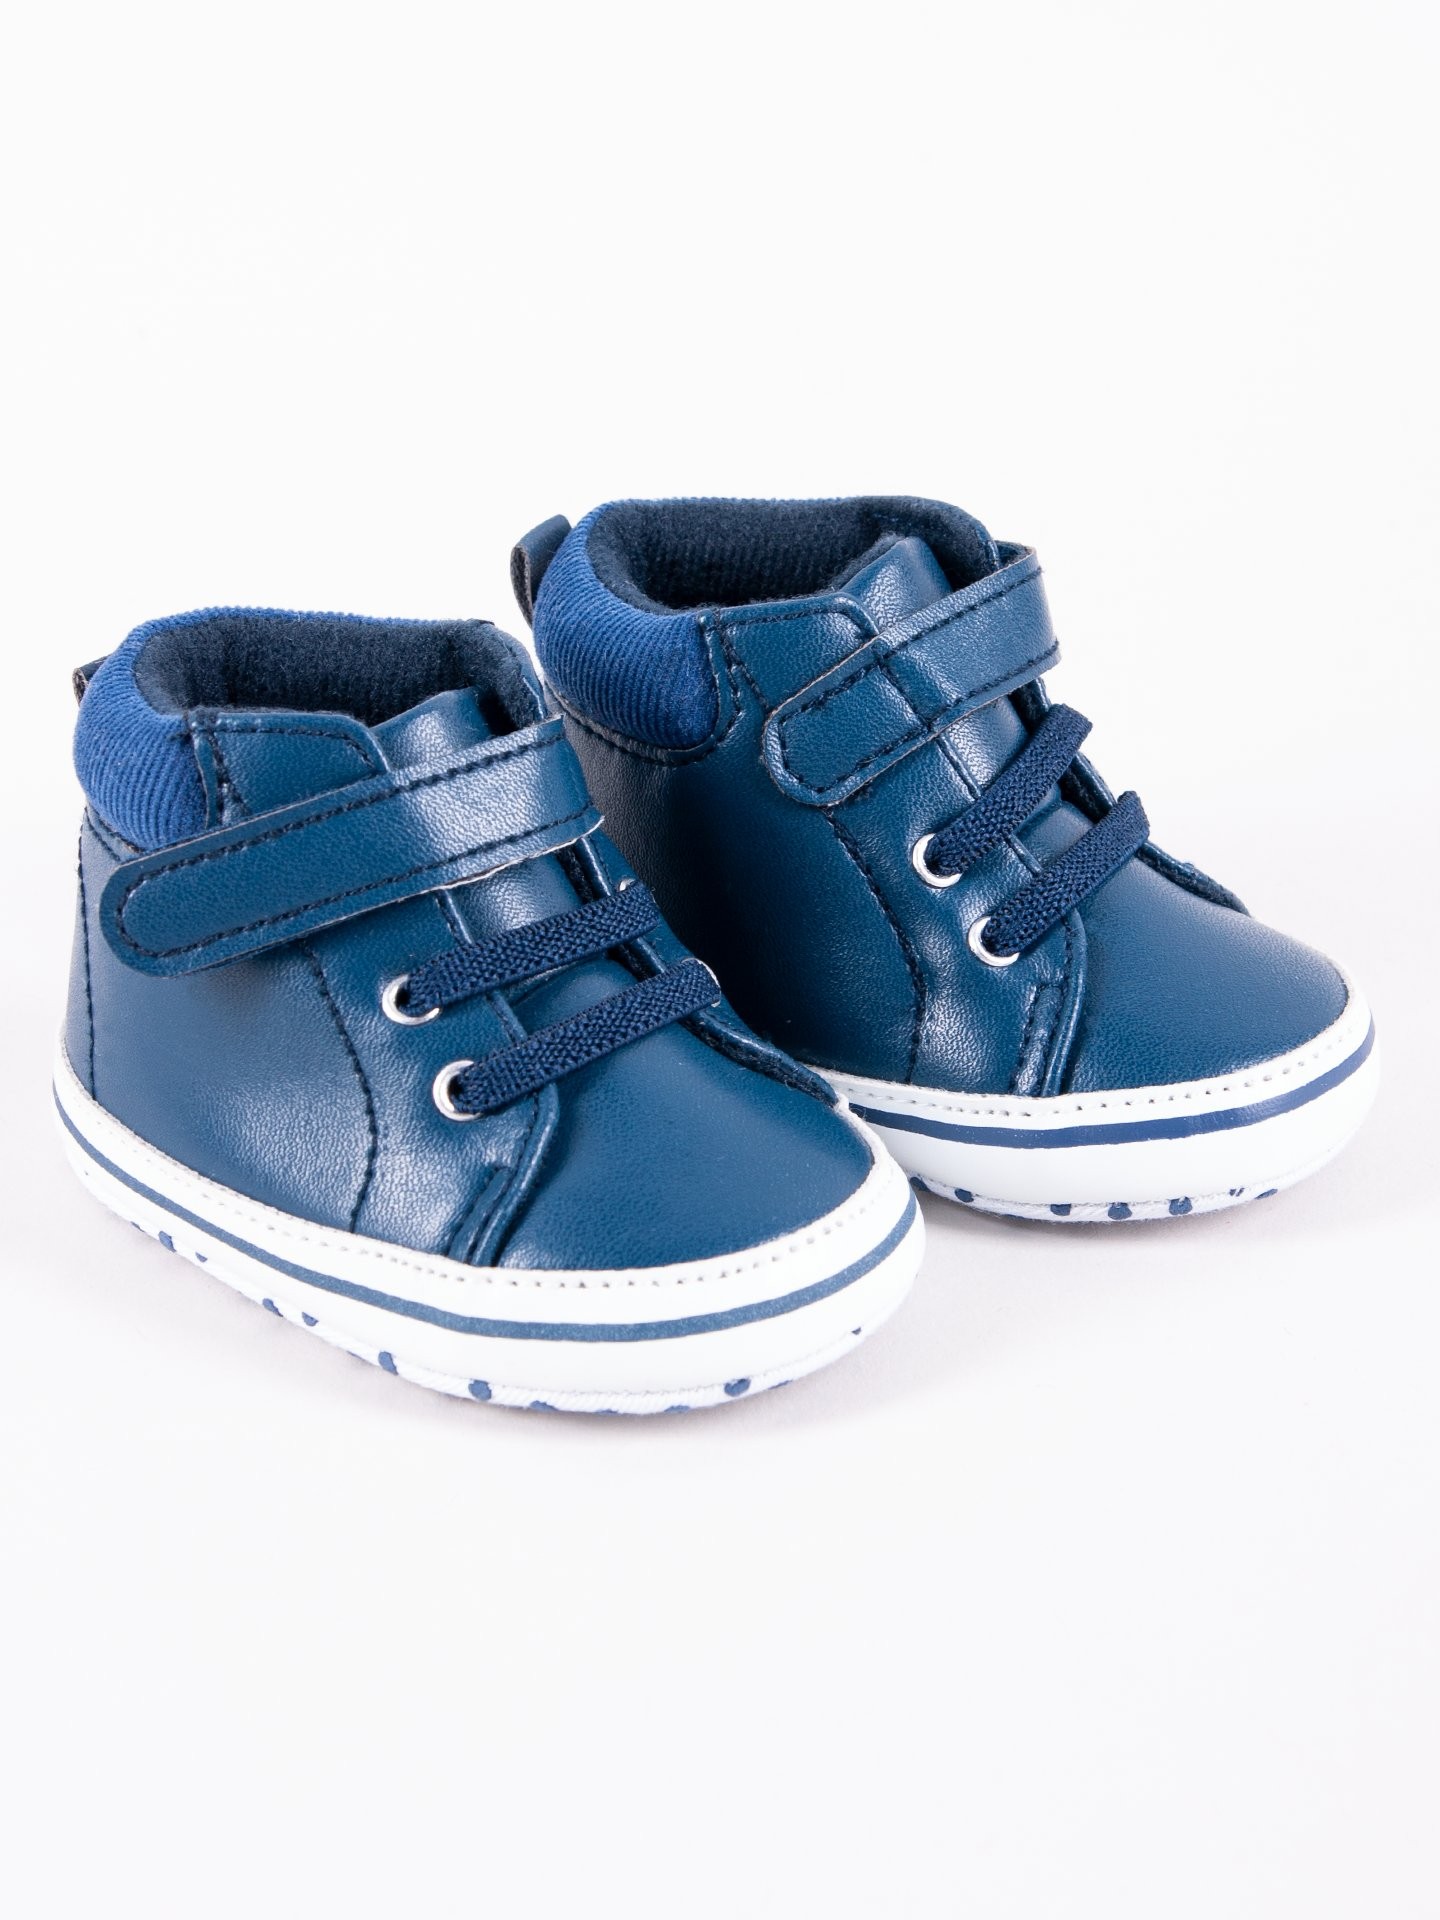 Levně Yoclub Kids's Baby Boy's Shoes OBO-0198C-1900 Navy Blue